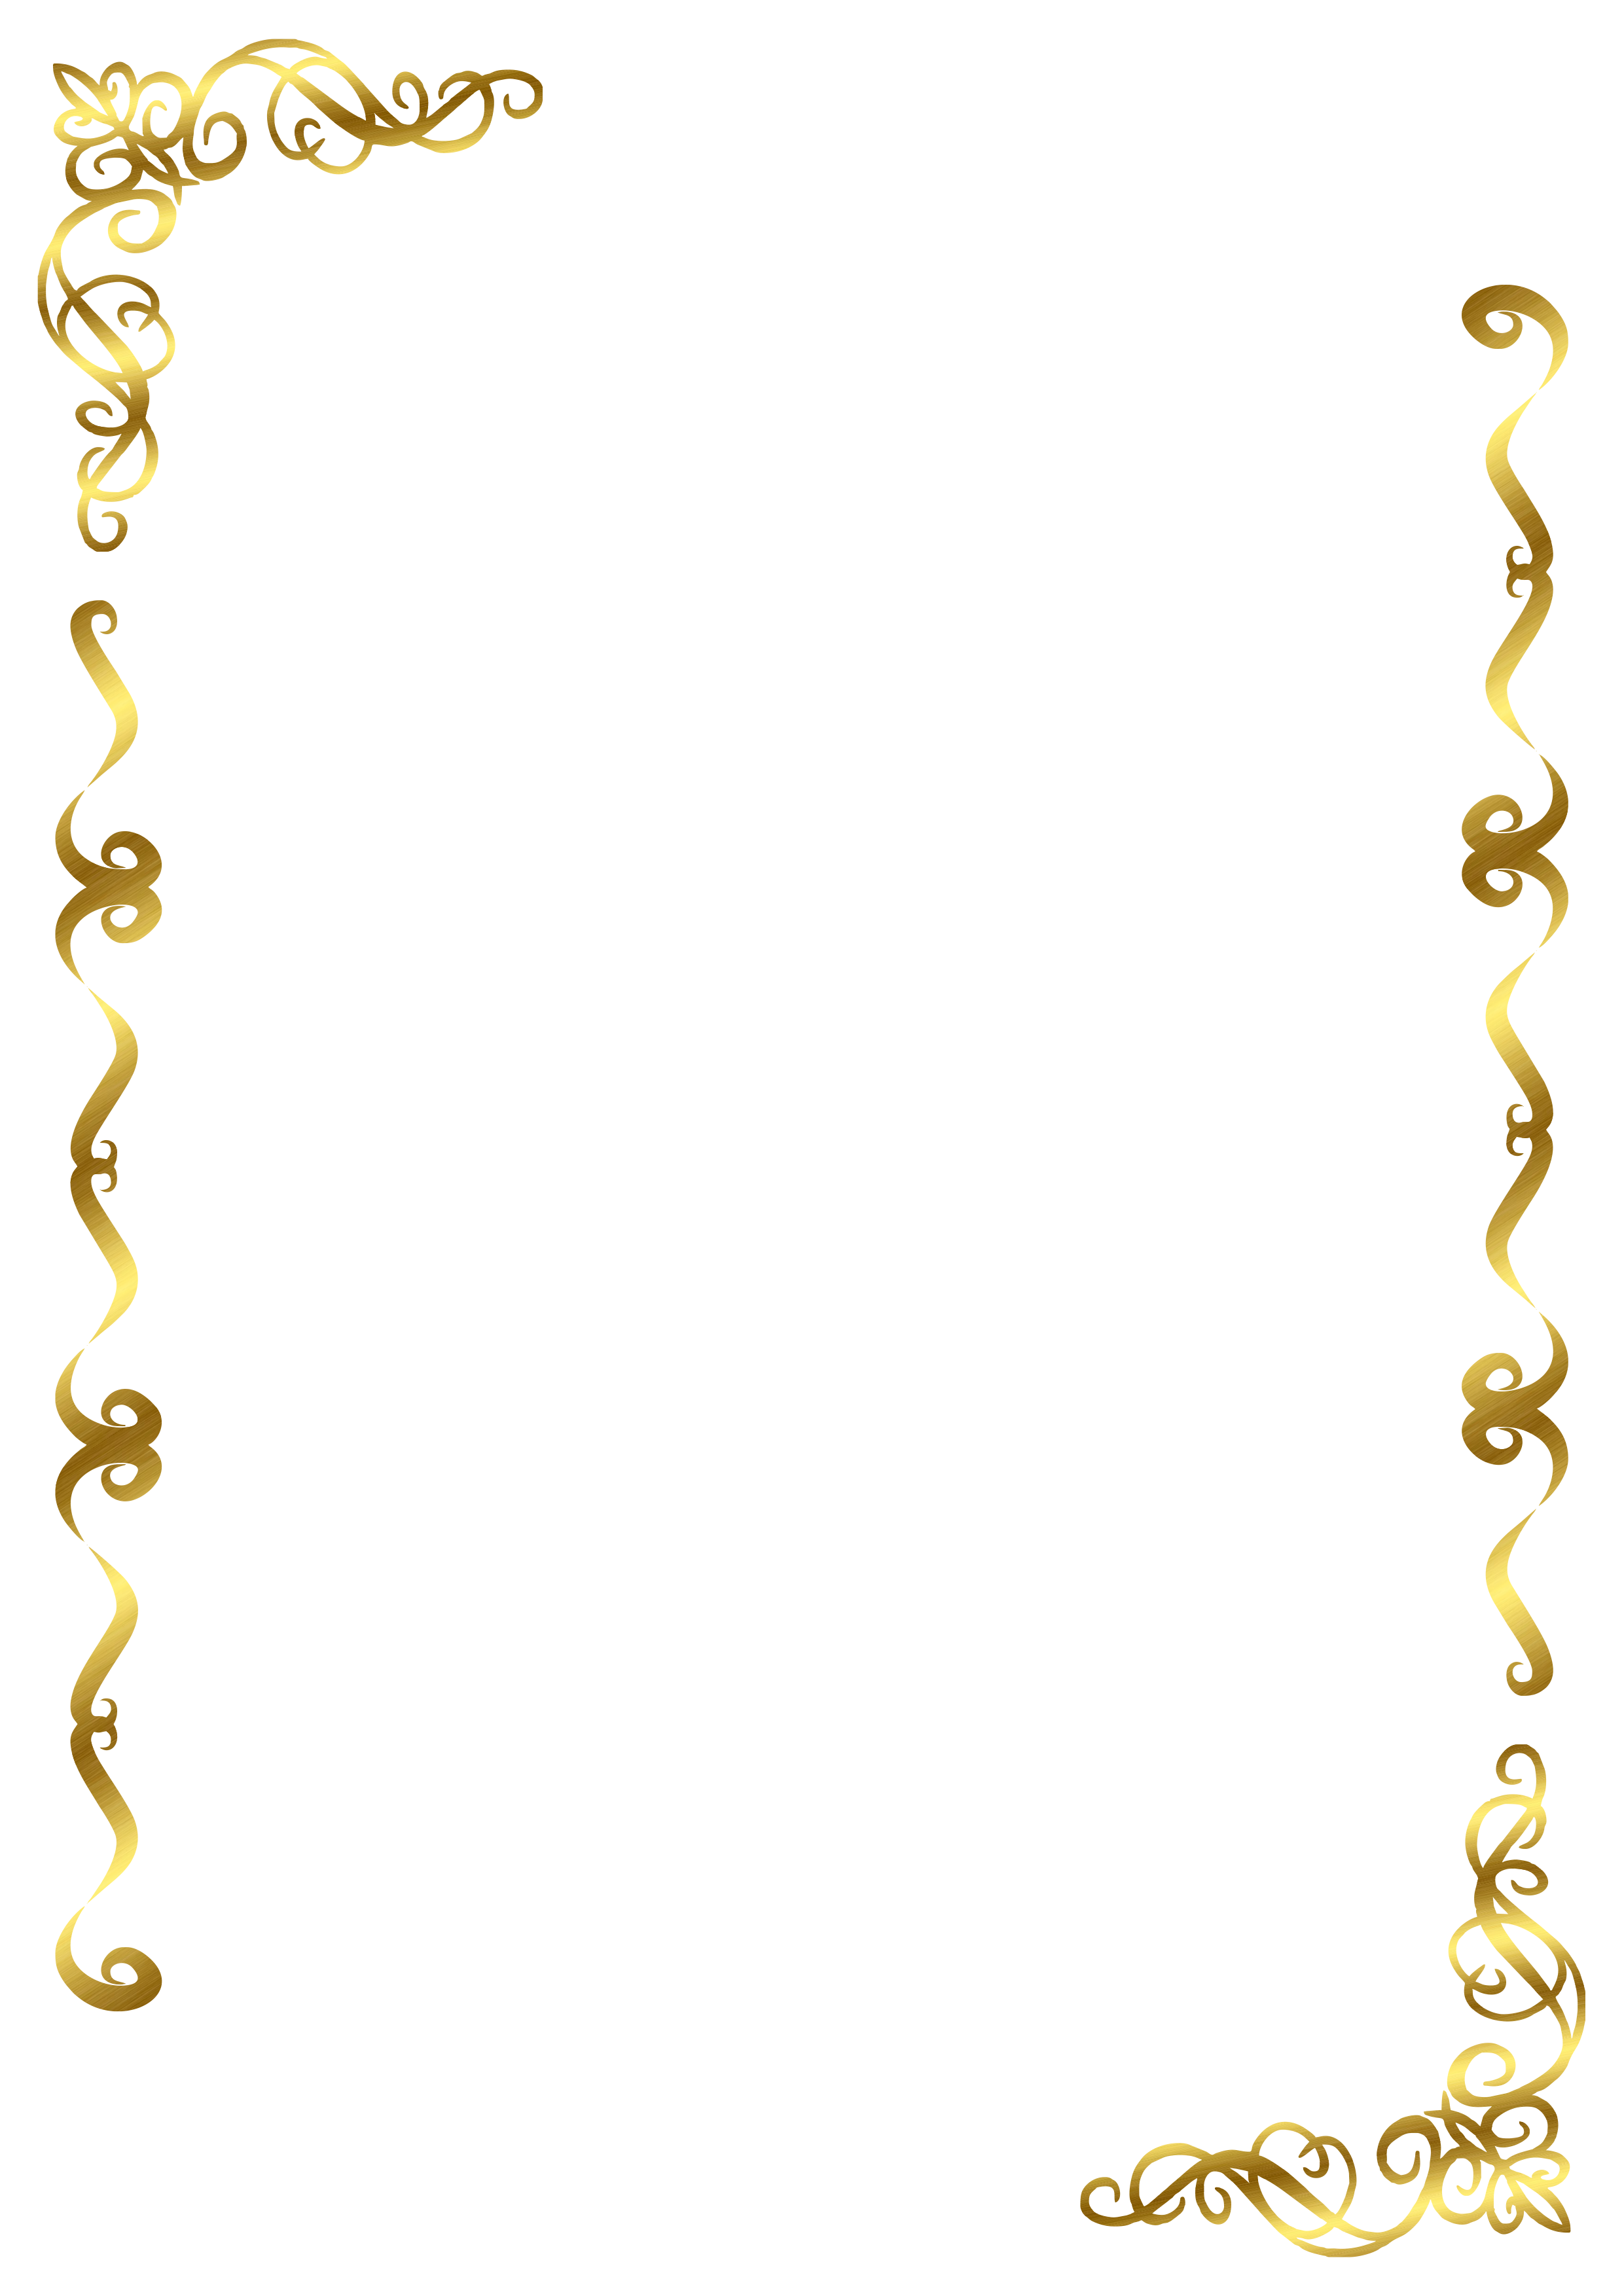 Moldura arabesco porta retrato fundo para convite dourado casamento noivado imagem sem fundo png